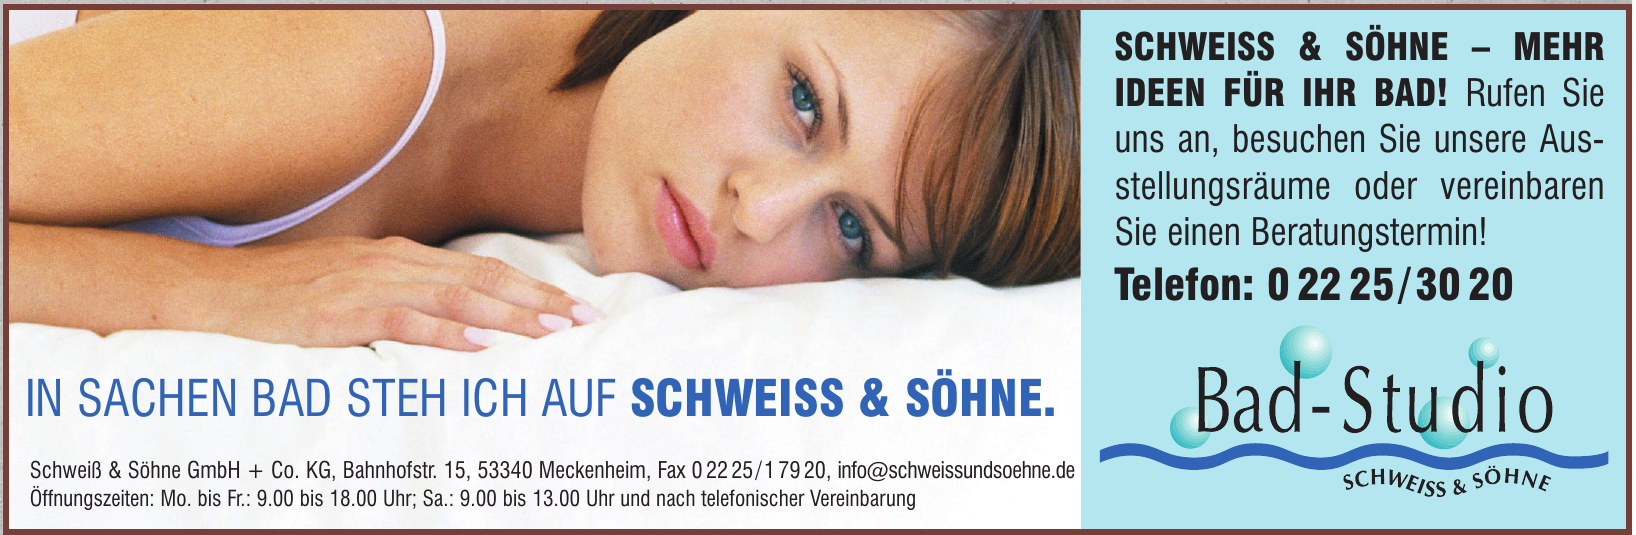 Schweiß & Söhne GmbH + Co. KG